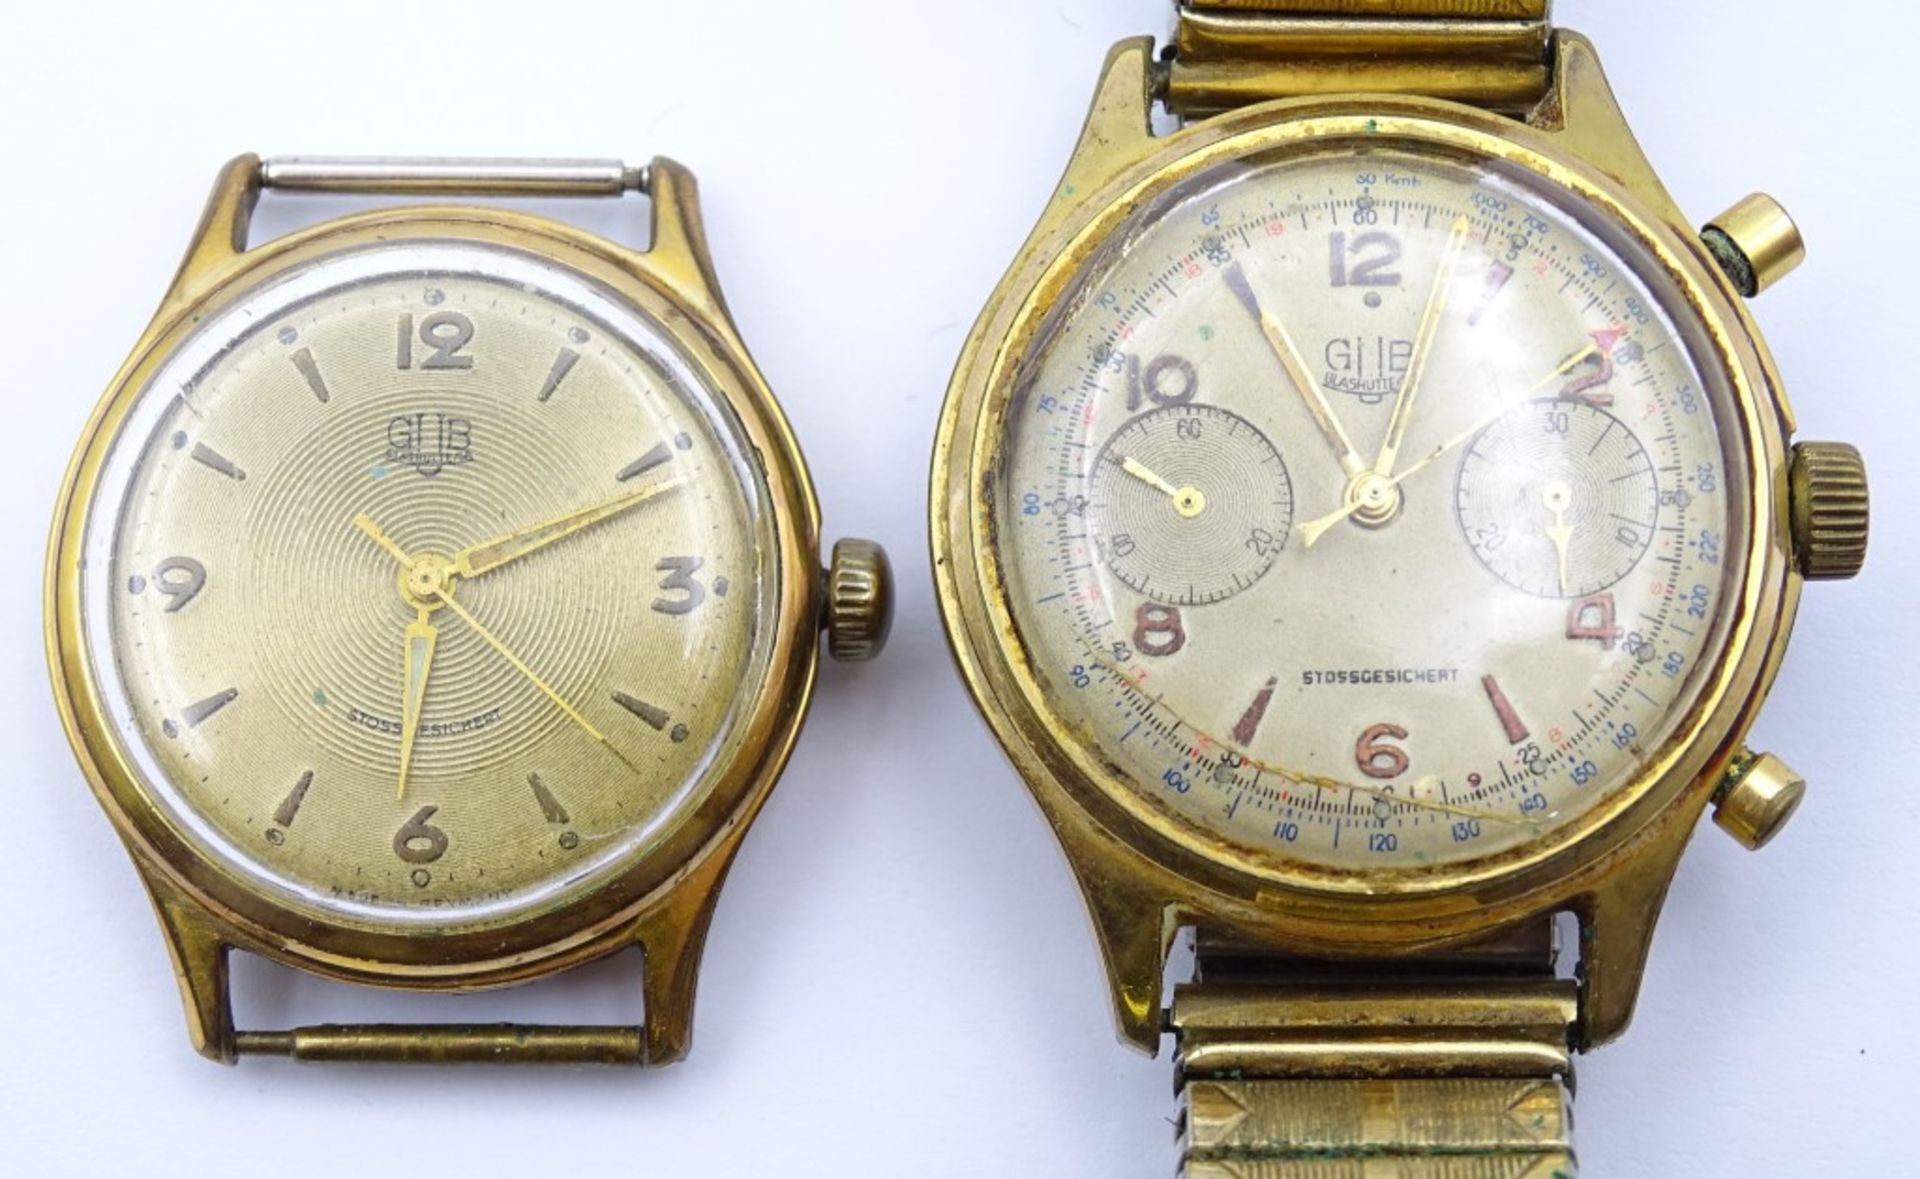 Zwei Armbanduhren "GUB",beide mechanisch,Werke laufen,vergoldet,Alters-u. Gebrauchsspuren, d-33- - Bild 2 aus 9